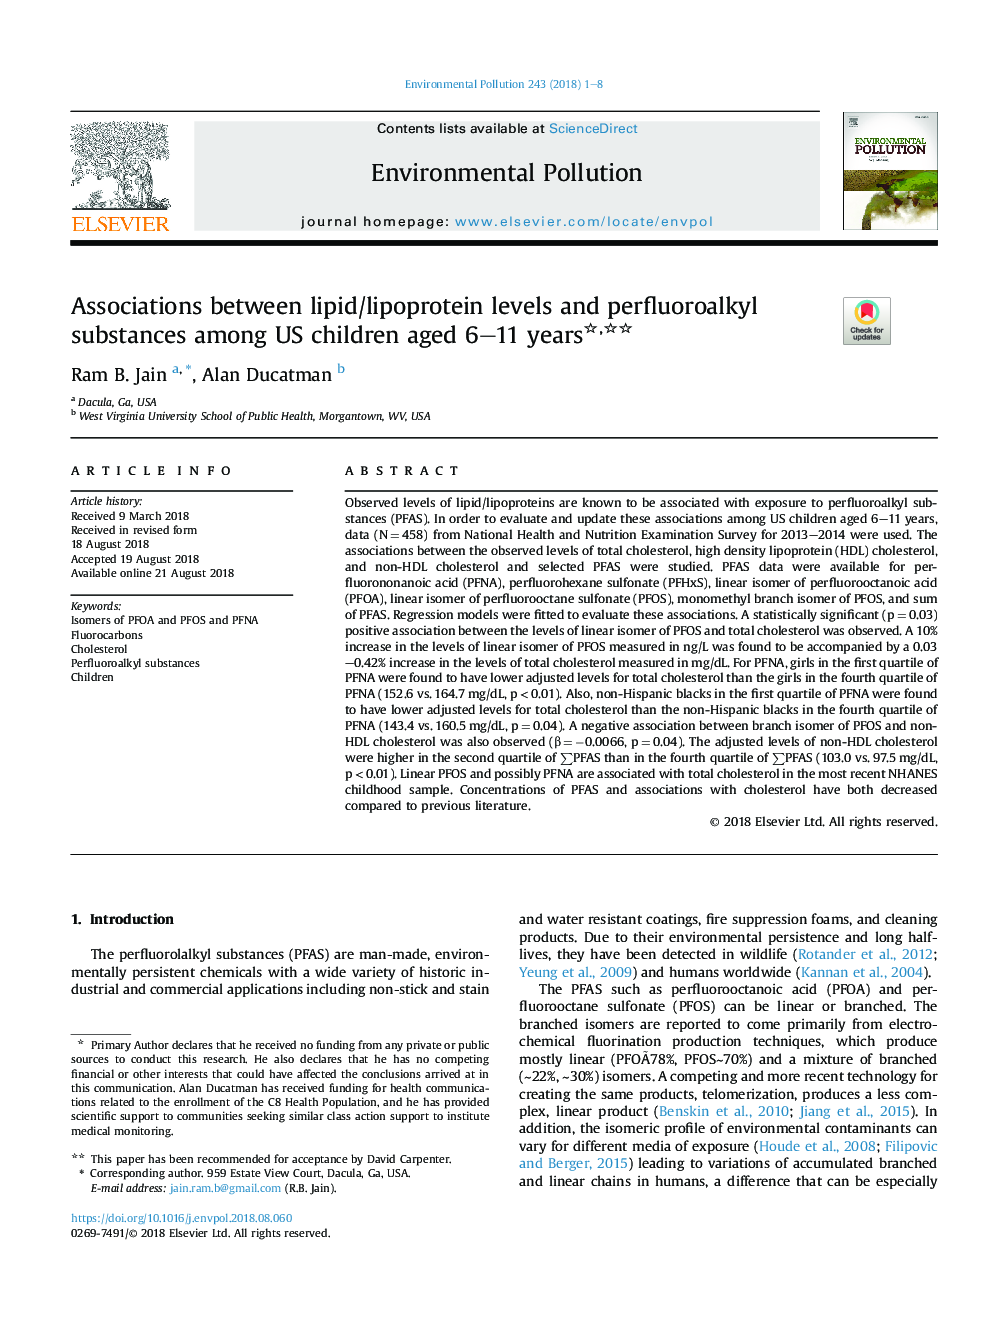 ارتباط بین سطوح چربی / لیپوپروتئین و مواد پرفروفیالکلی در میان کودکان 6 تا 11 ساله ایالات متحده